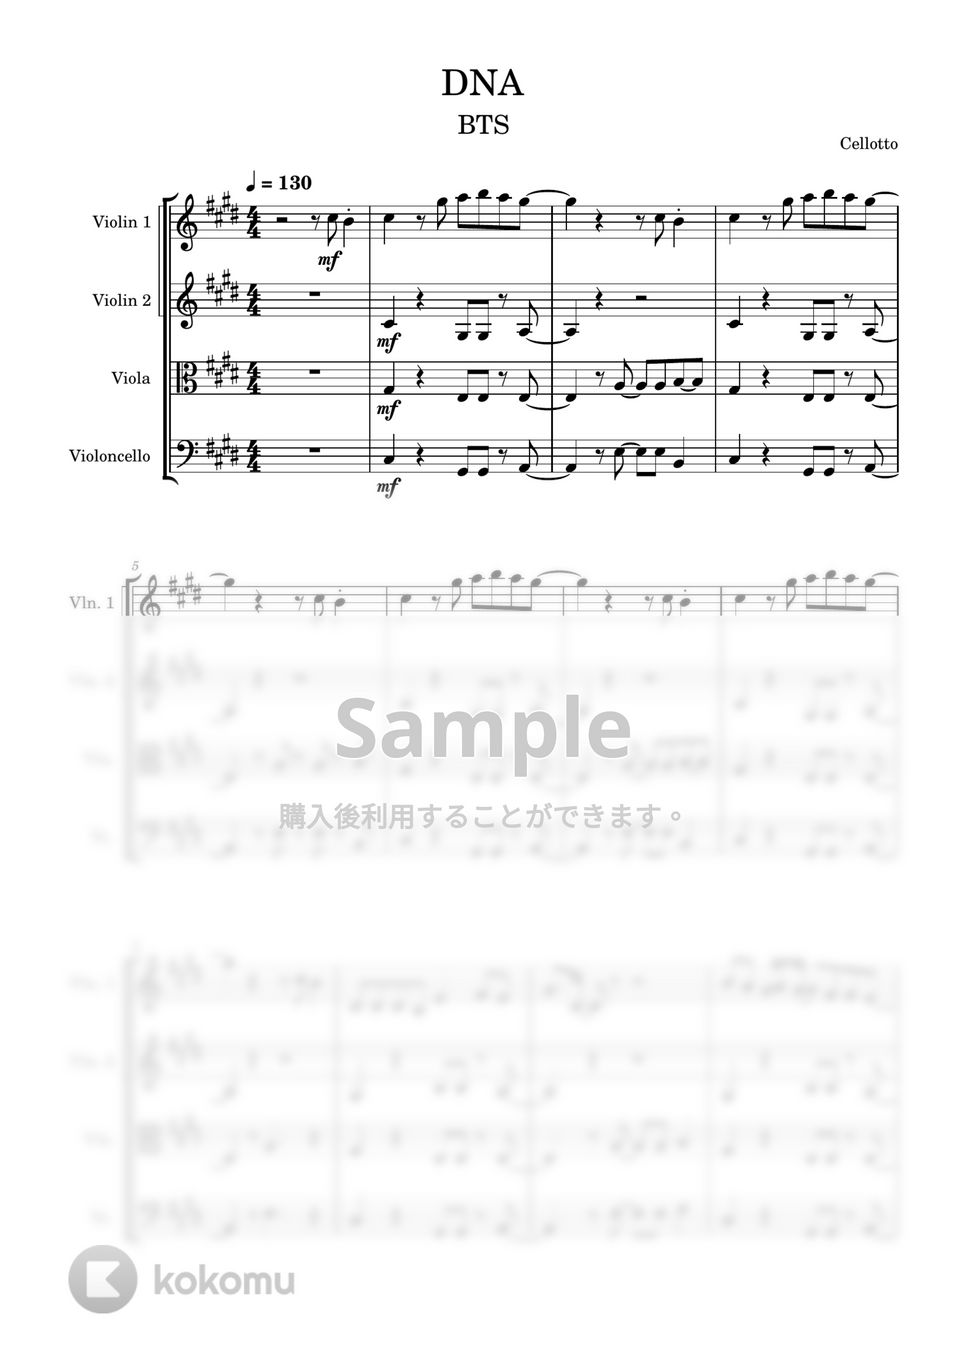 防弾少年団(BTS) - DNA (弦楽四重奏) by Cellotto